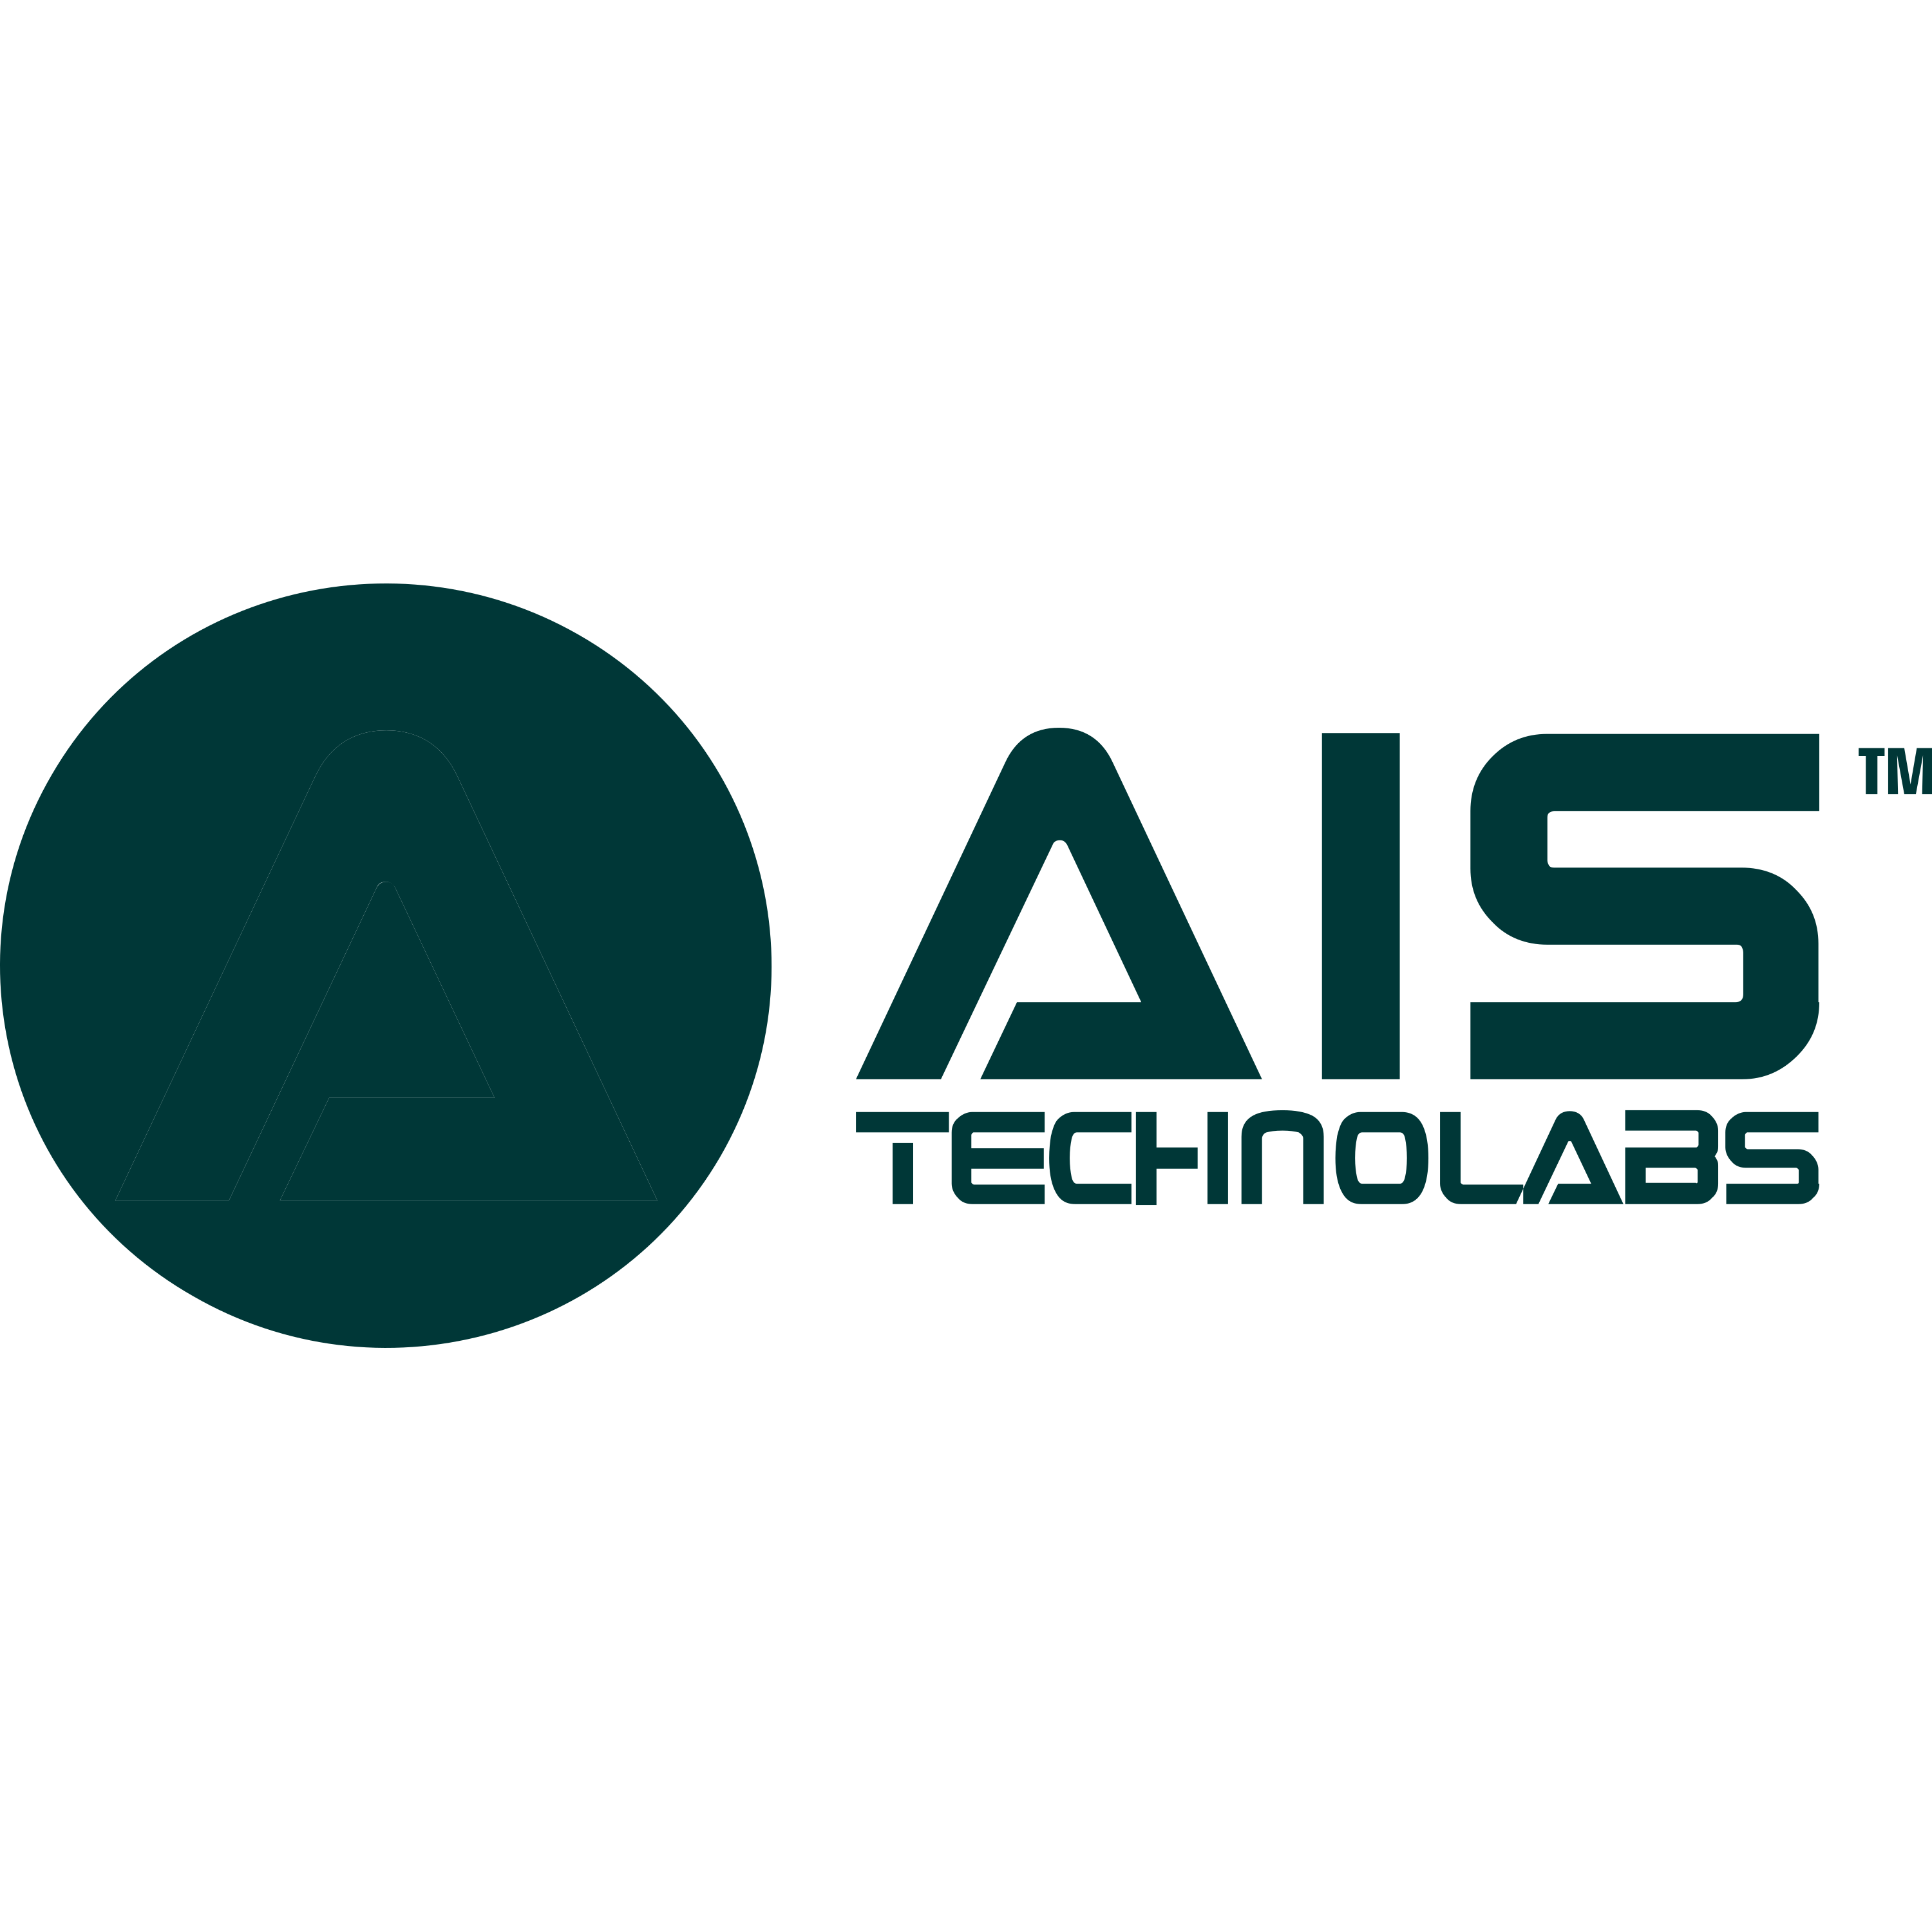 Ais Technolabs Logo  Transparent Gallery